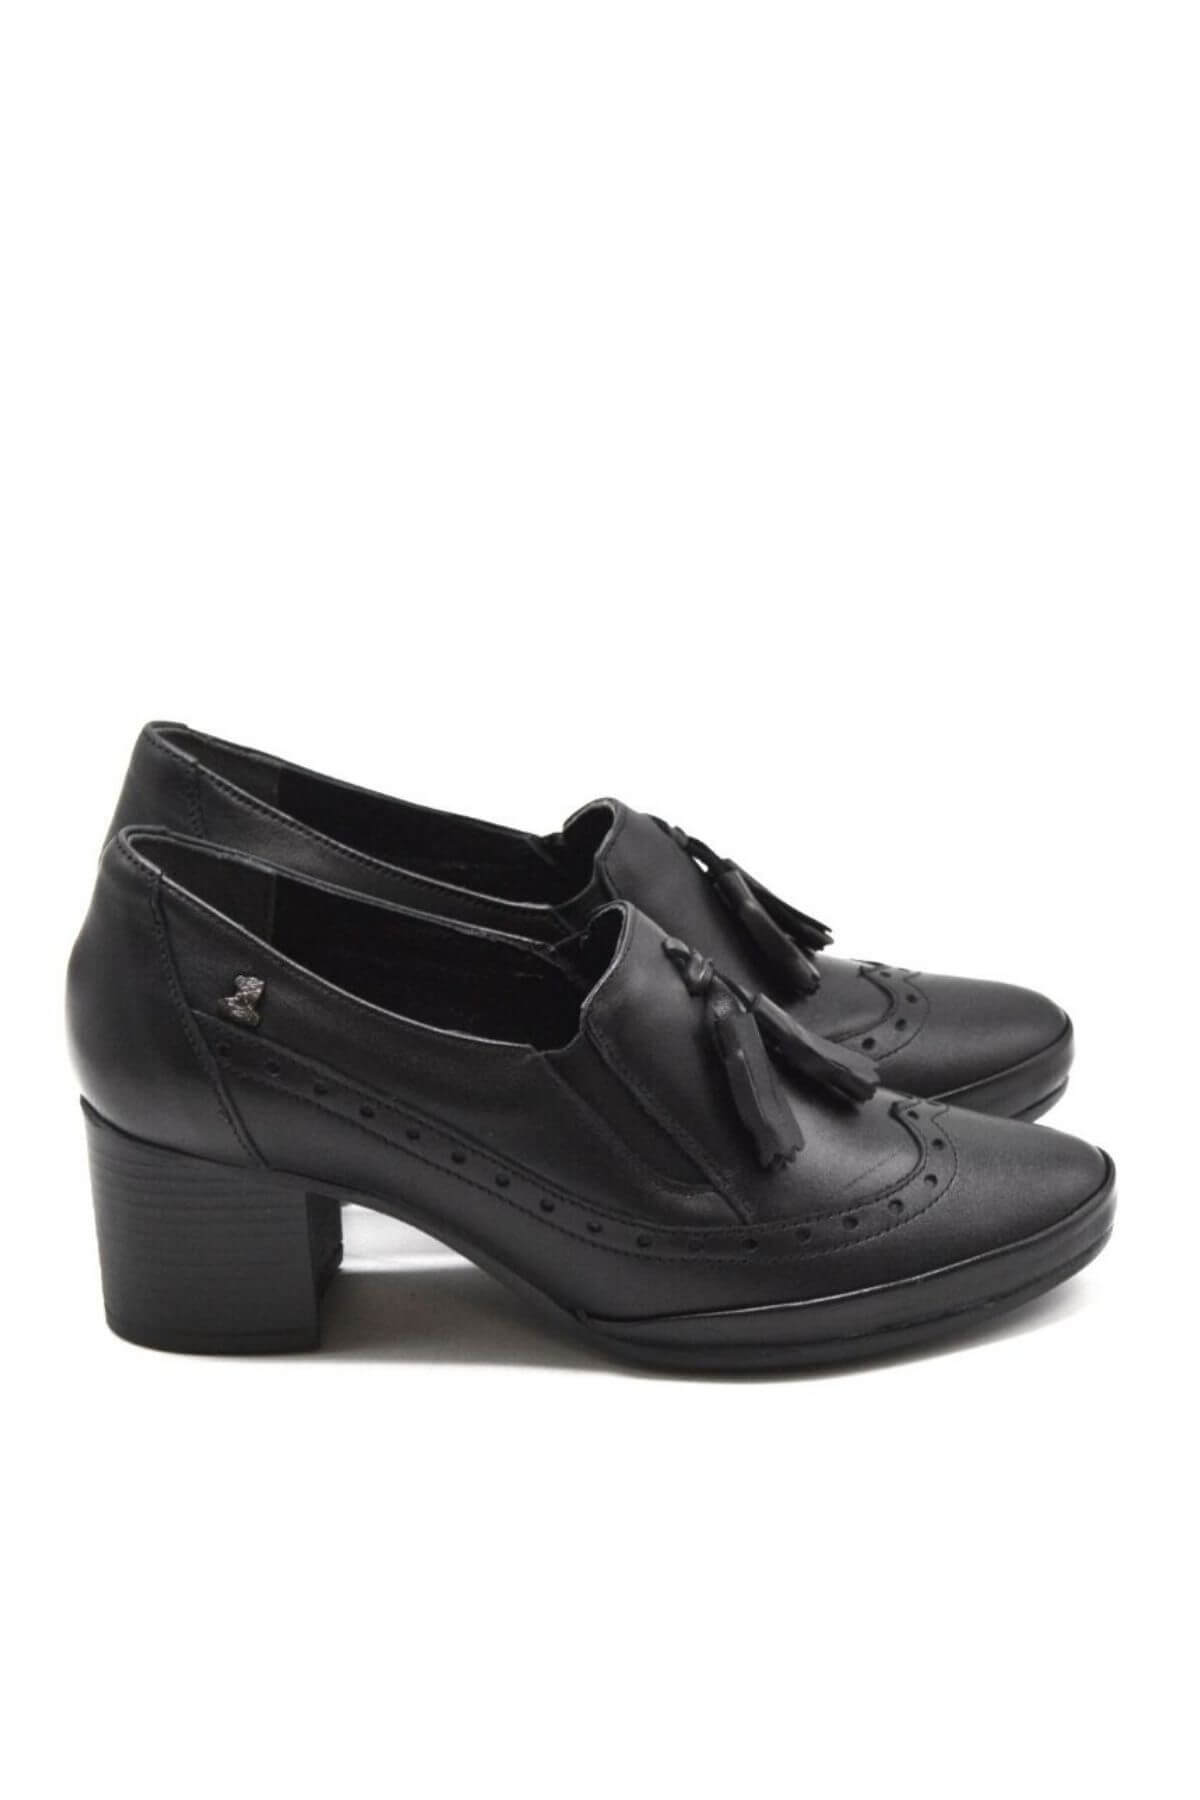 Kadın Topuklu Deri Ayakkabı Siyah 1911943K